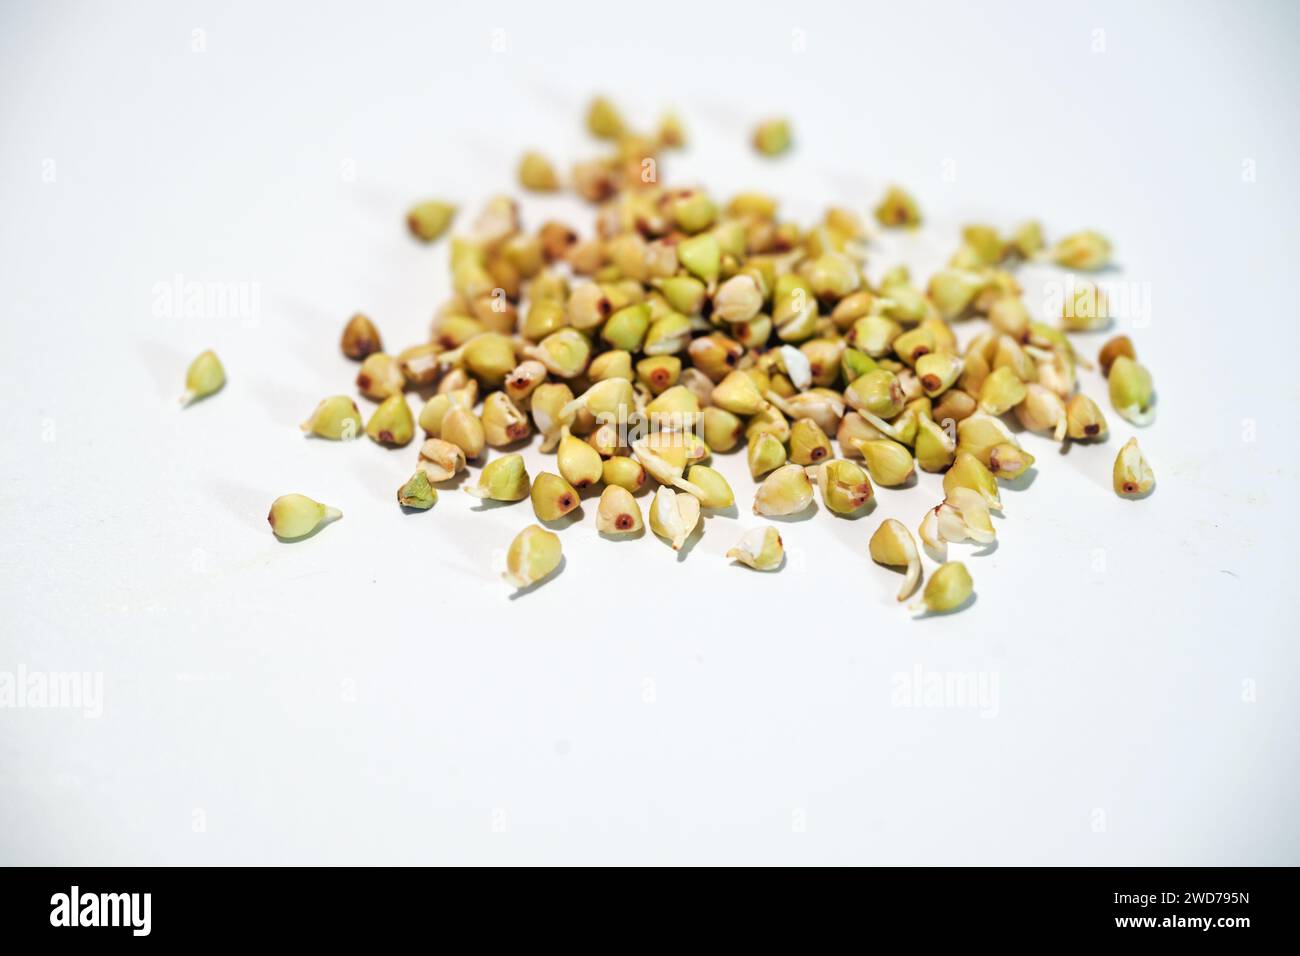 Processo di germinazione di semi di grano saraceno, germogli sani ricchi di enzimi viventi, sostanze vitali, minerali e proteine digeribili, copia ravvicinata Foto Stock